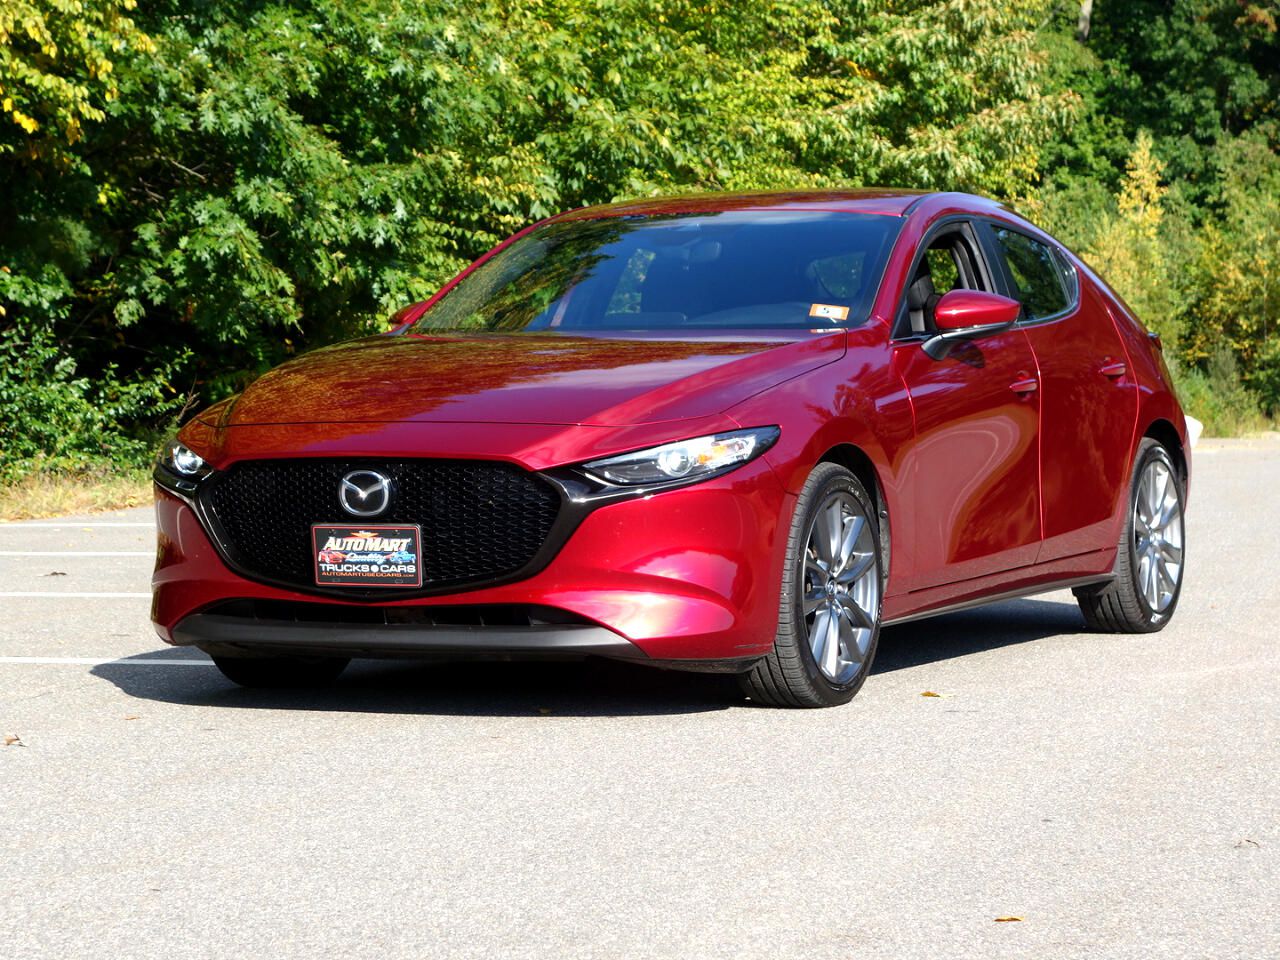 2019 Mazda Mazda3 Hatchback